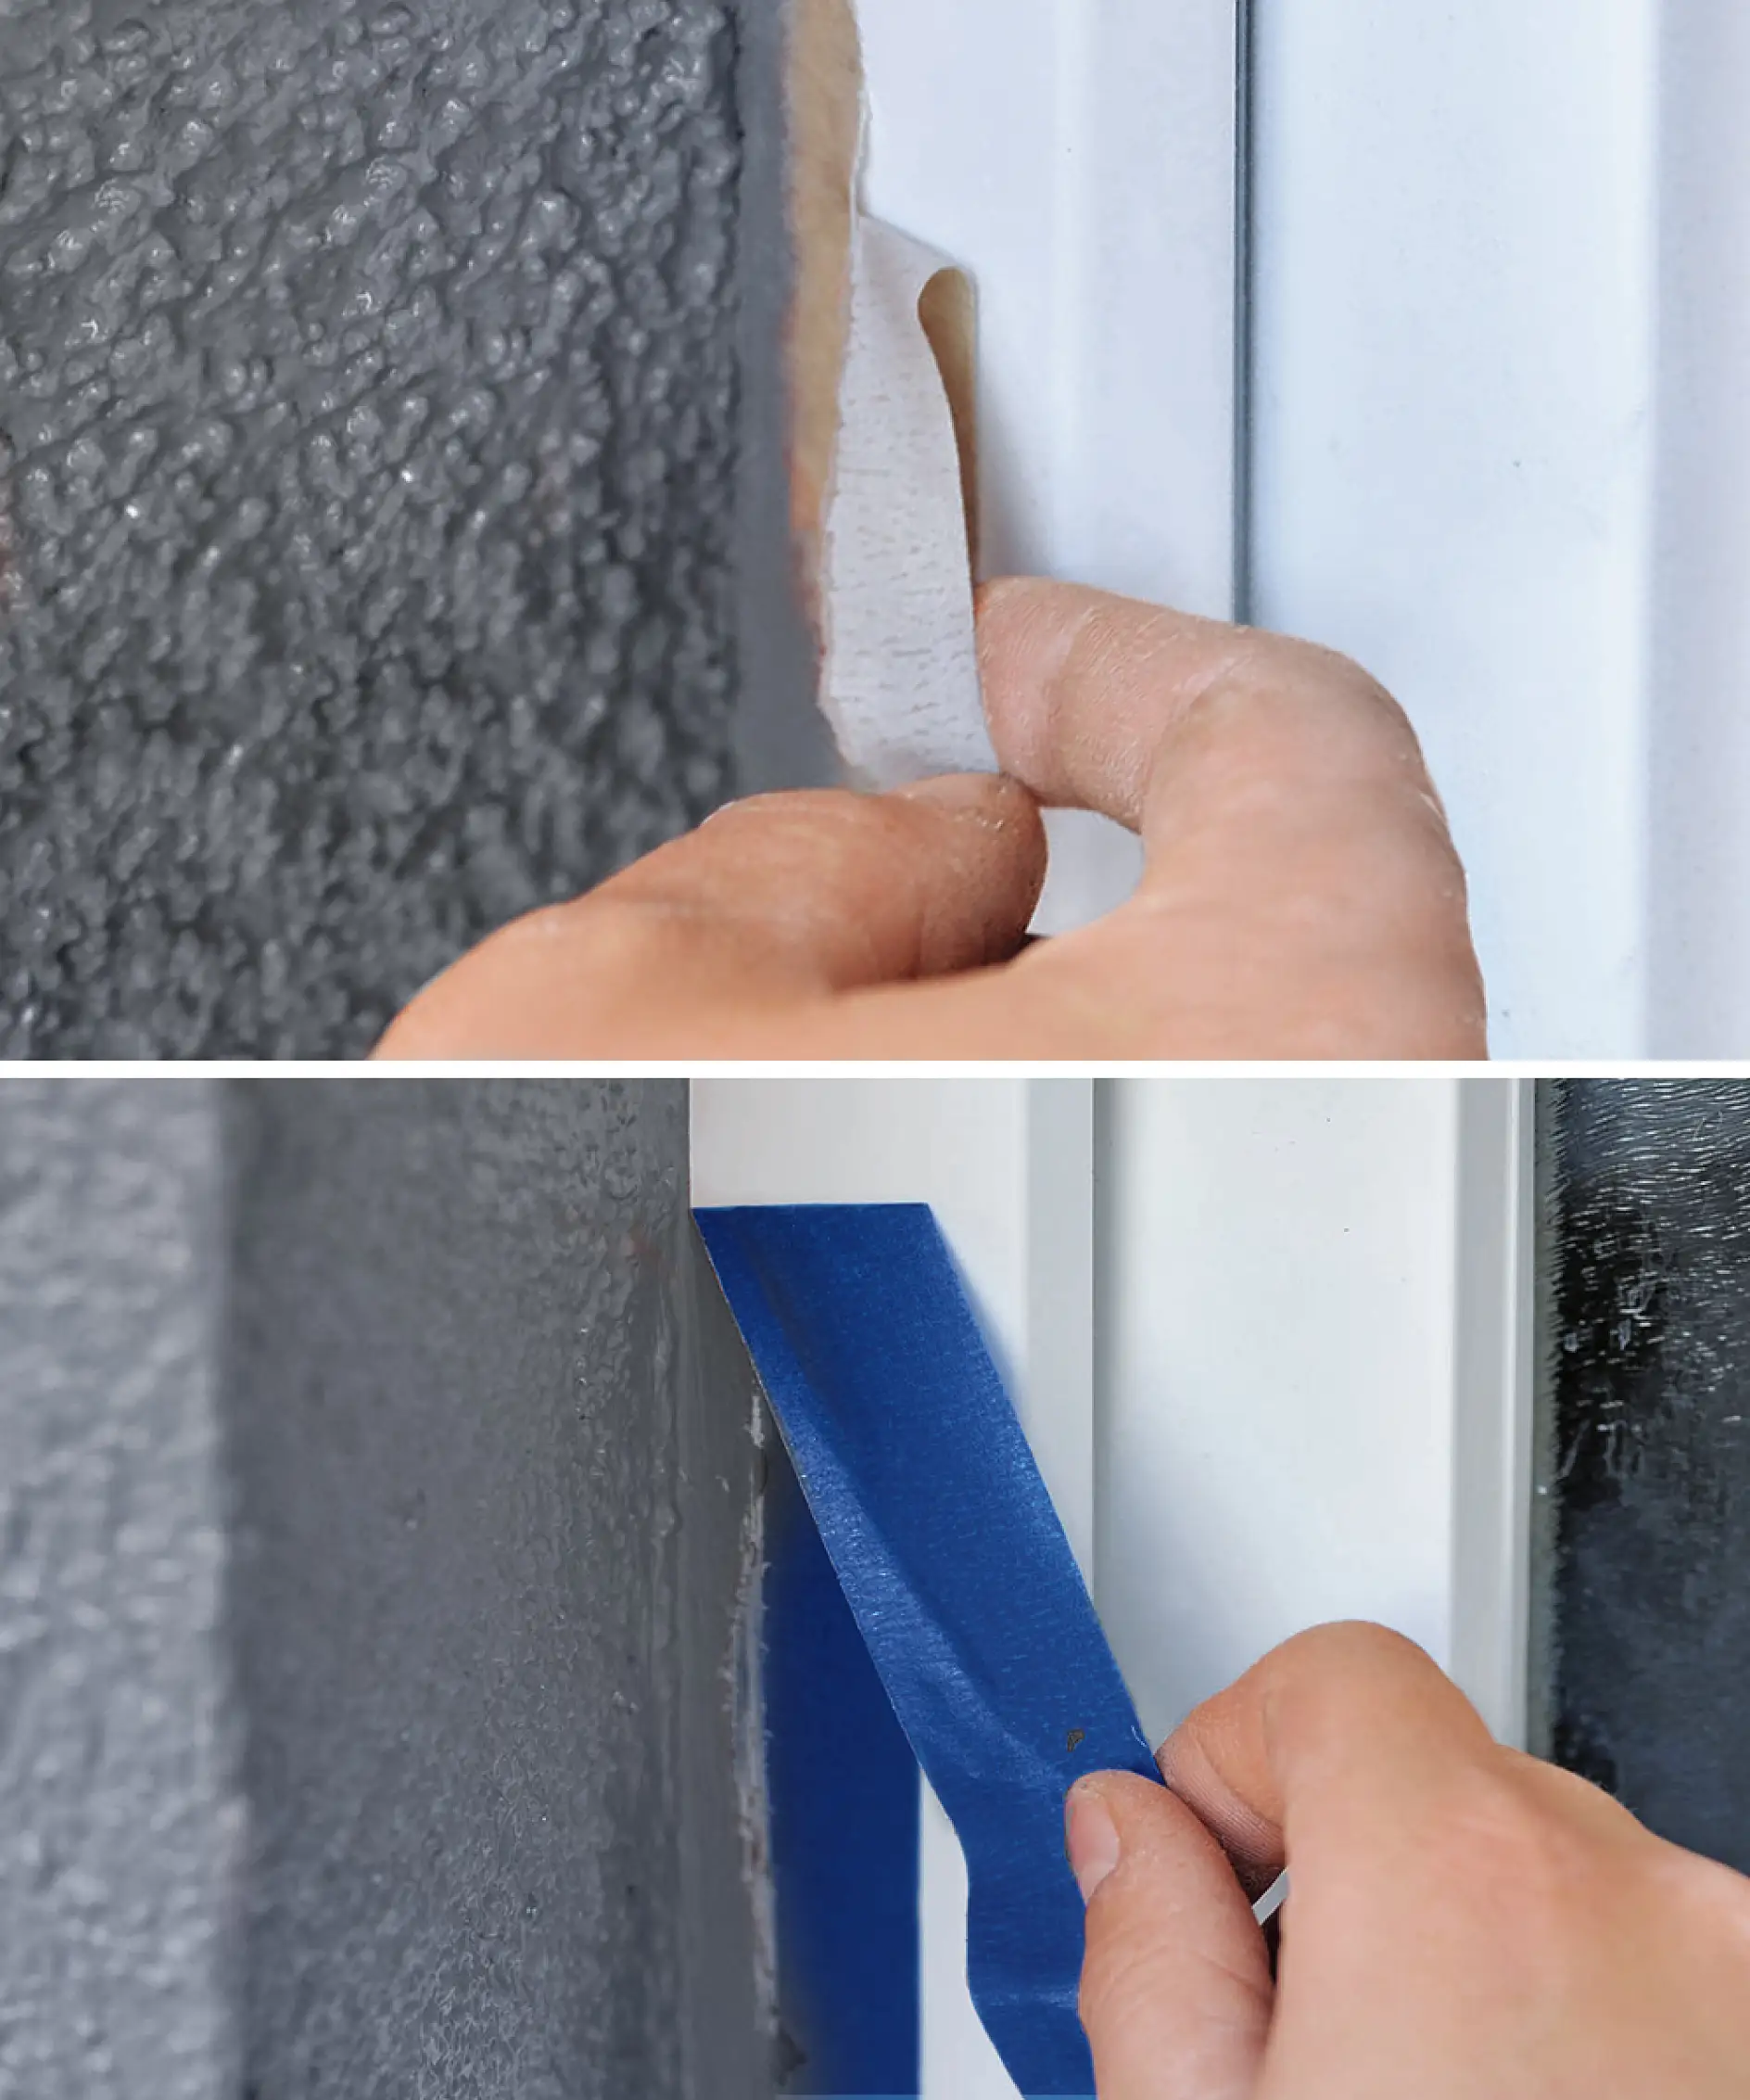 Mascarea ferestrelor cu rame PVC poate fi dificilă atunci când se utilizează banda nepotrivită.